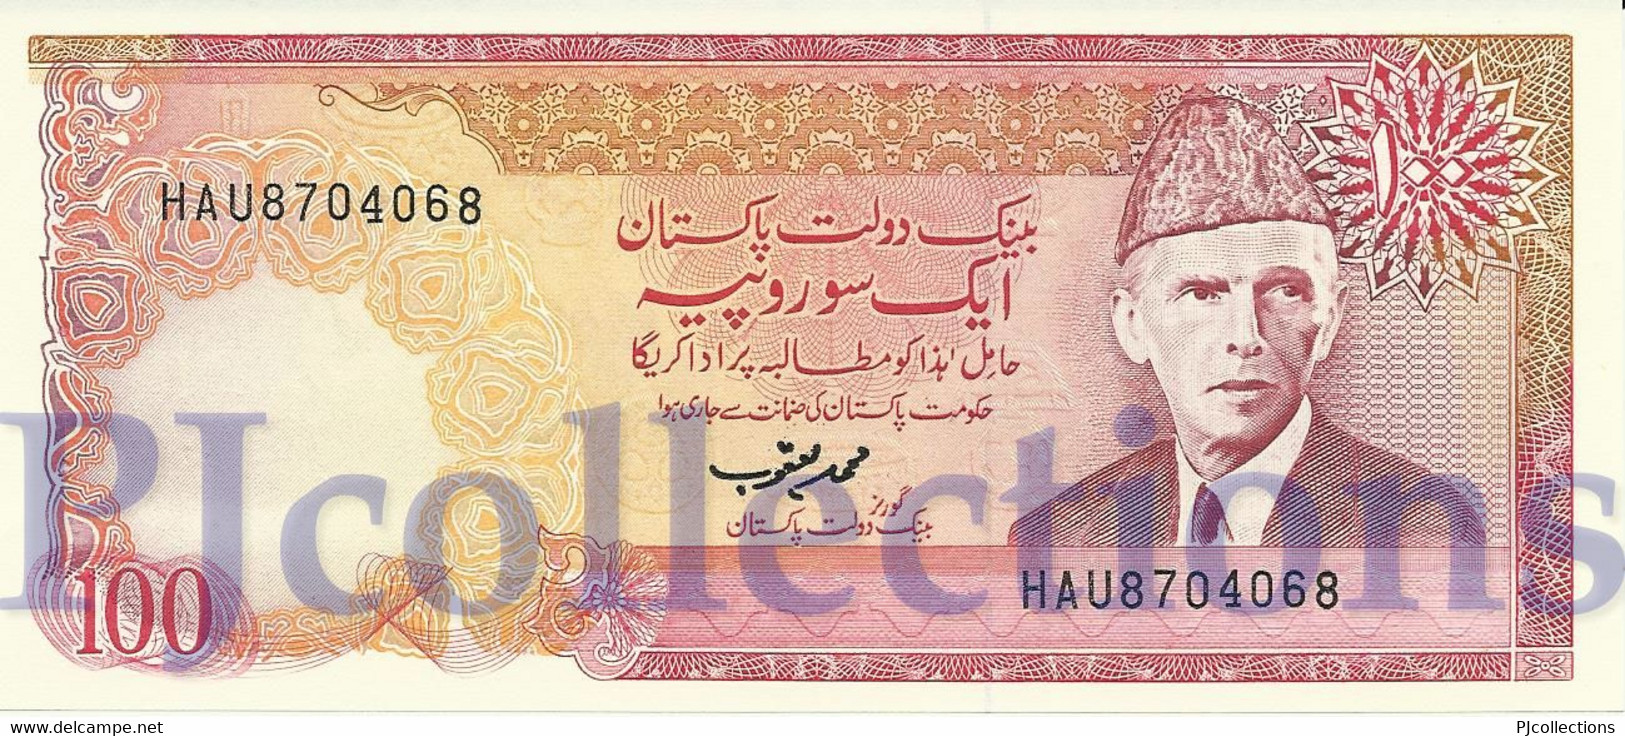 PAKISTAN 100 RUPEES 1986 PICK 41 UNC NO PINHOLES - Pakistan